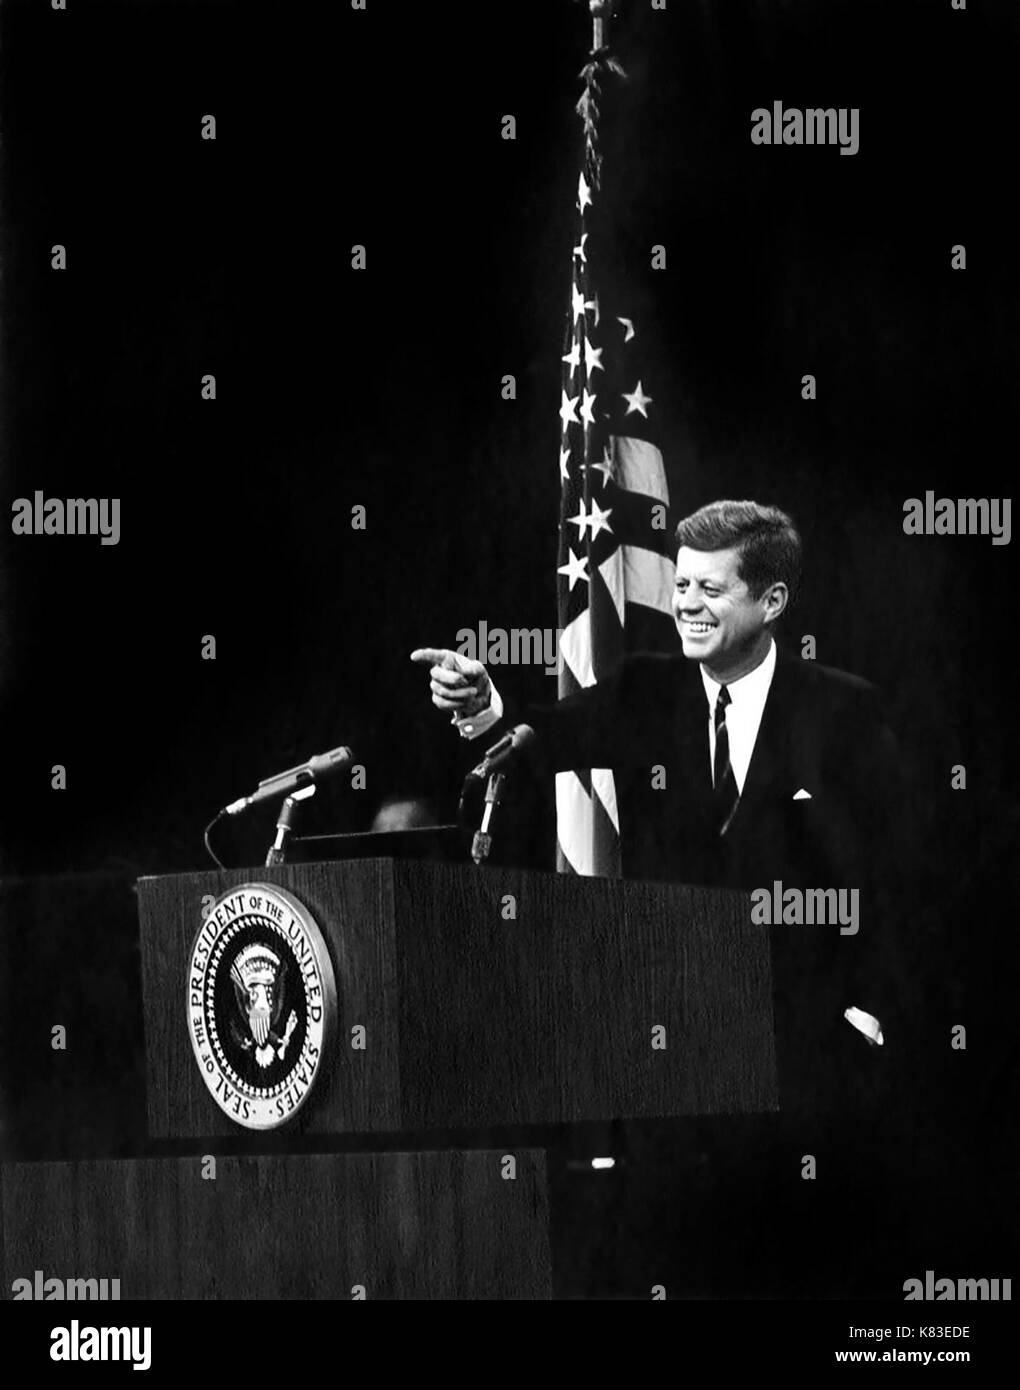 Le président des États-Unis John f. Kennedy se dirigeant à un journaliste au cours d'une conférence de presse à l'auditorium du département d'État le 20 novembre 1962. (Photo de abbie rowe) Banque D'Images